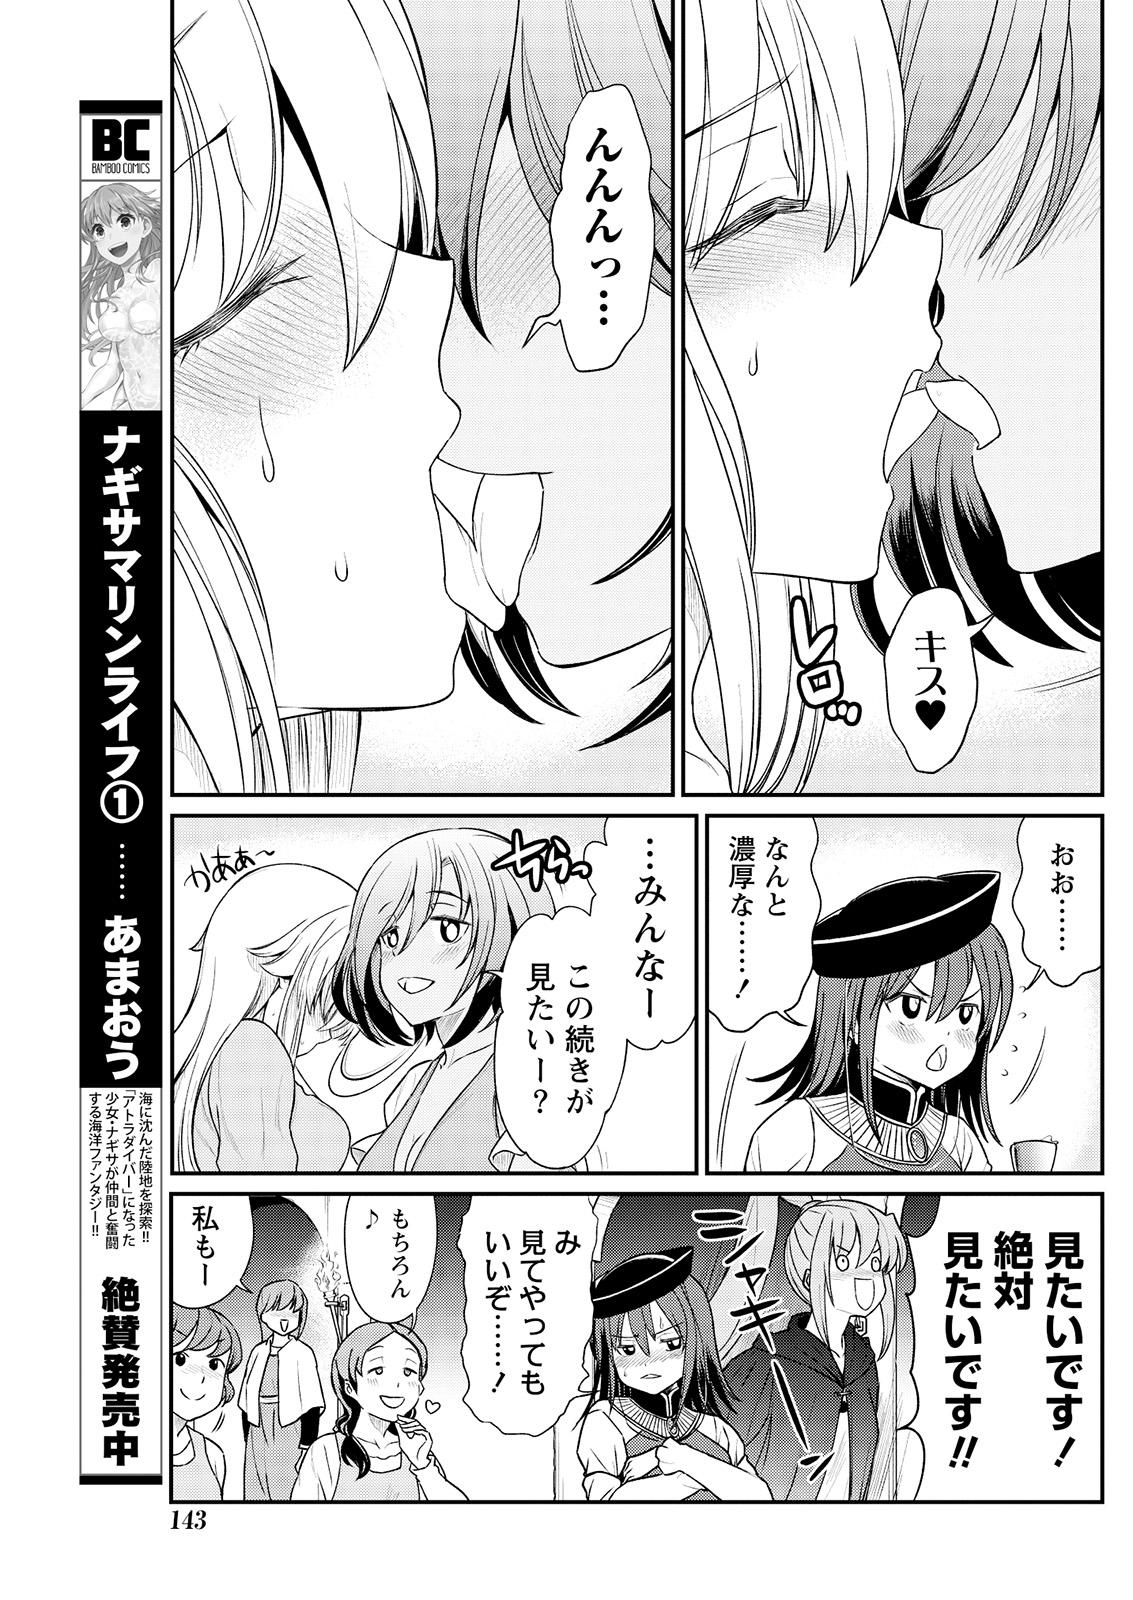 Spooning Kukkorose no Himekishi to nari, Yuri Shoukan de Hataraku koto ni Narimashita. 10 Cheat - Page 8